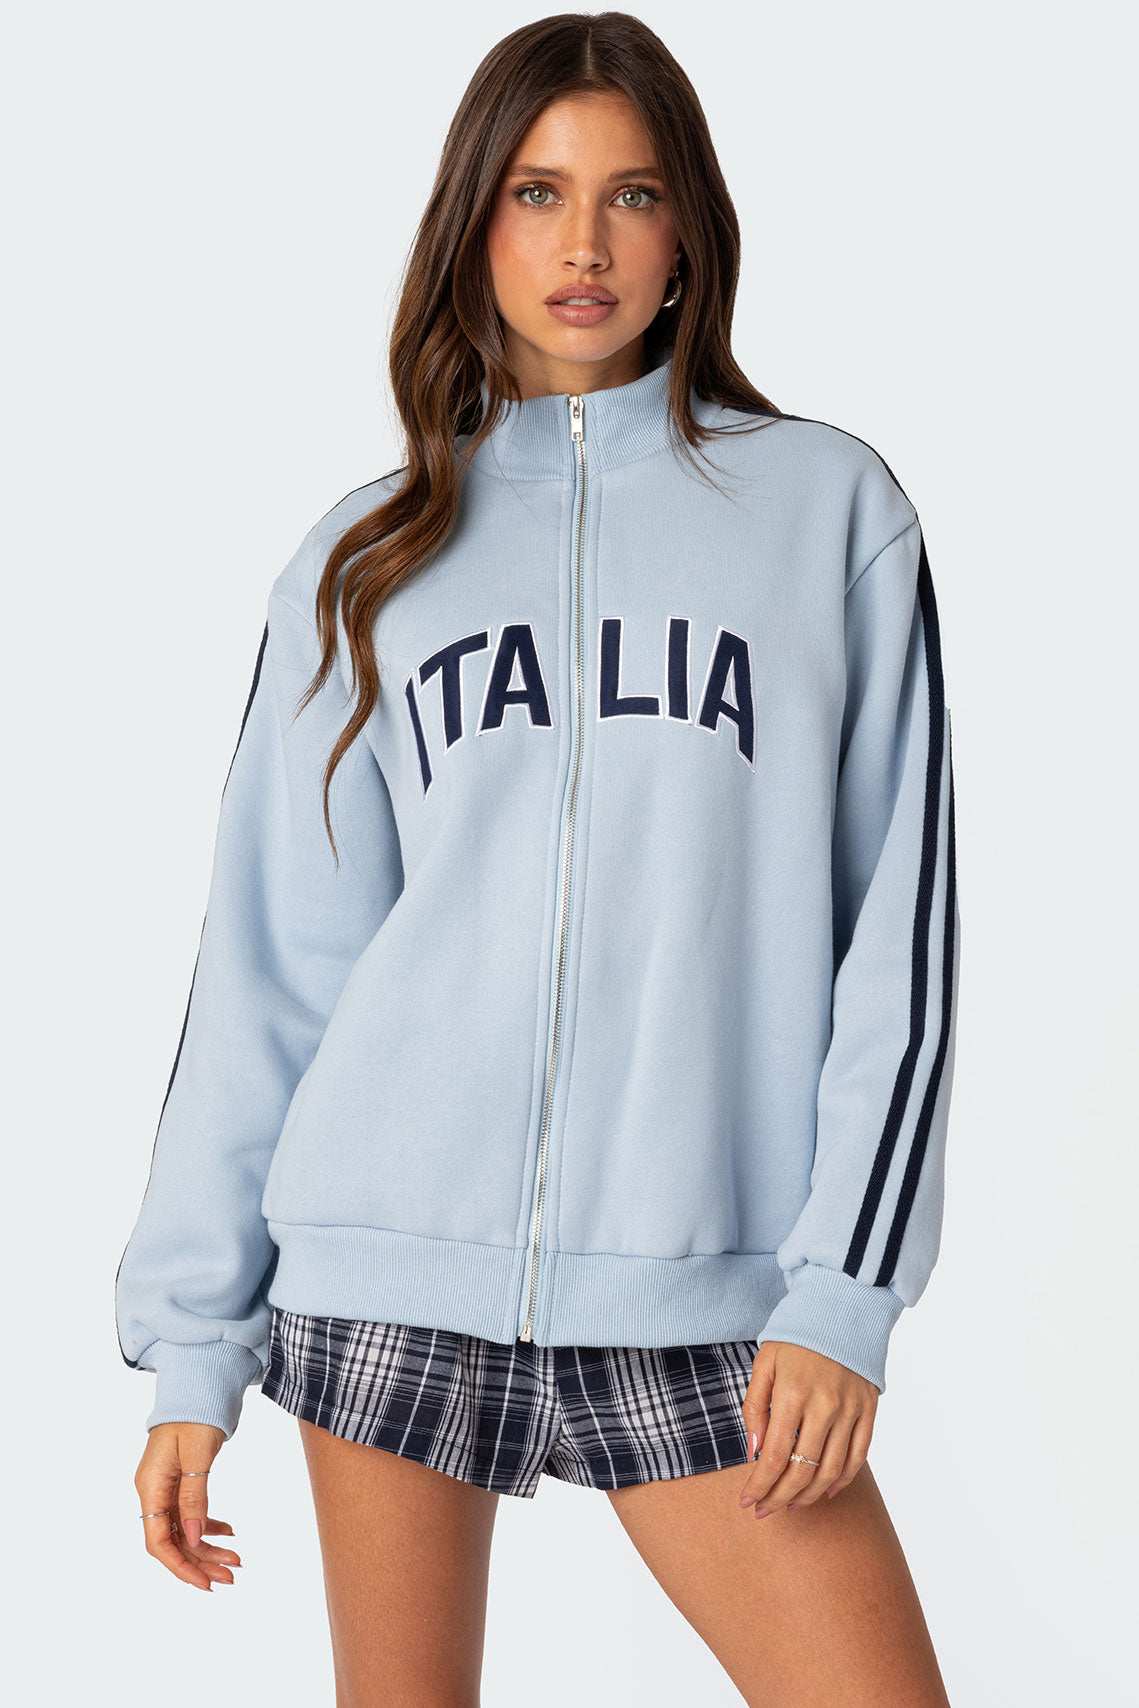 Italy track jacket